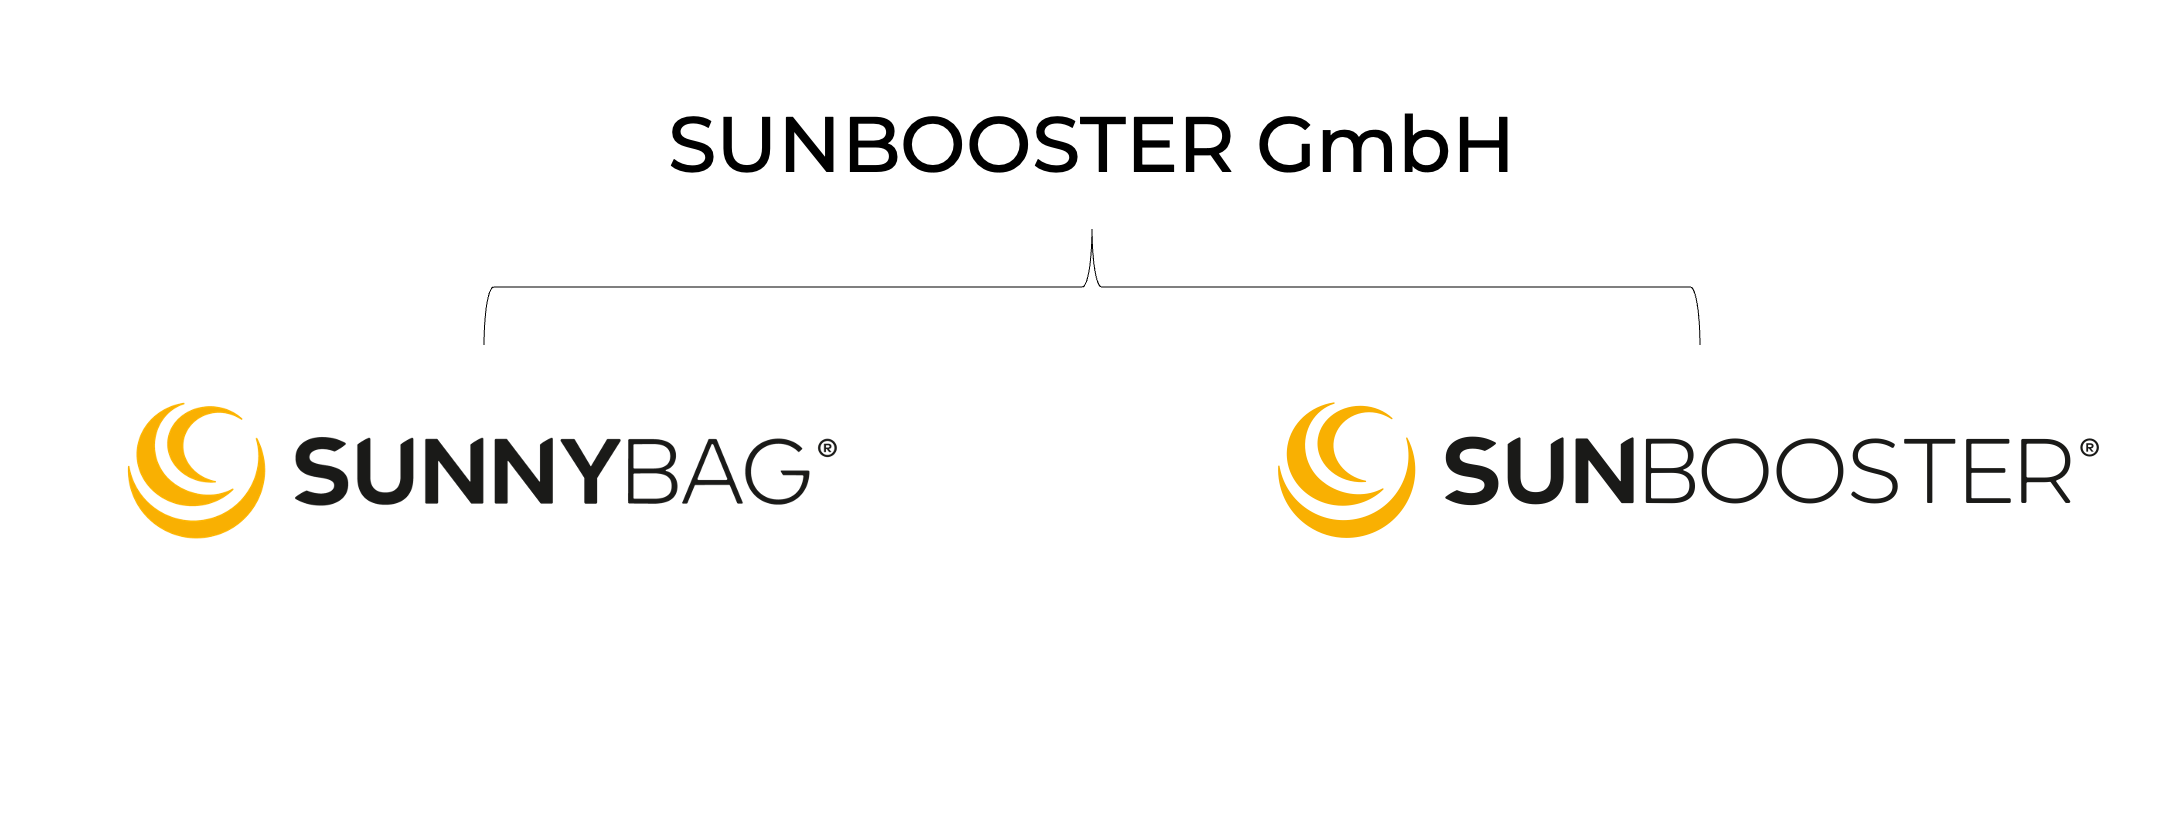 Neuer Name, gleiche Marken: Wir sind jetzt die SUNBOOSTER GmbH! 🌞